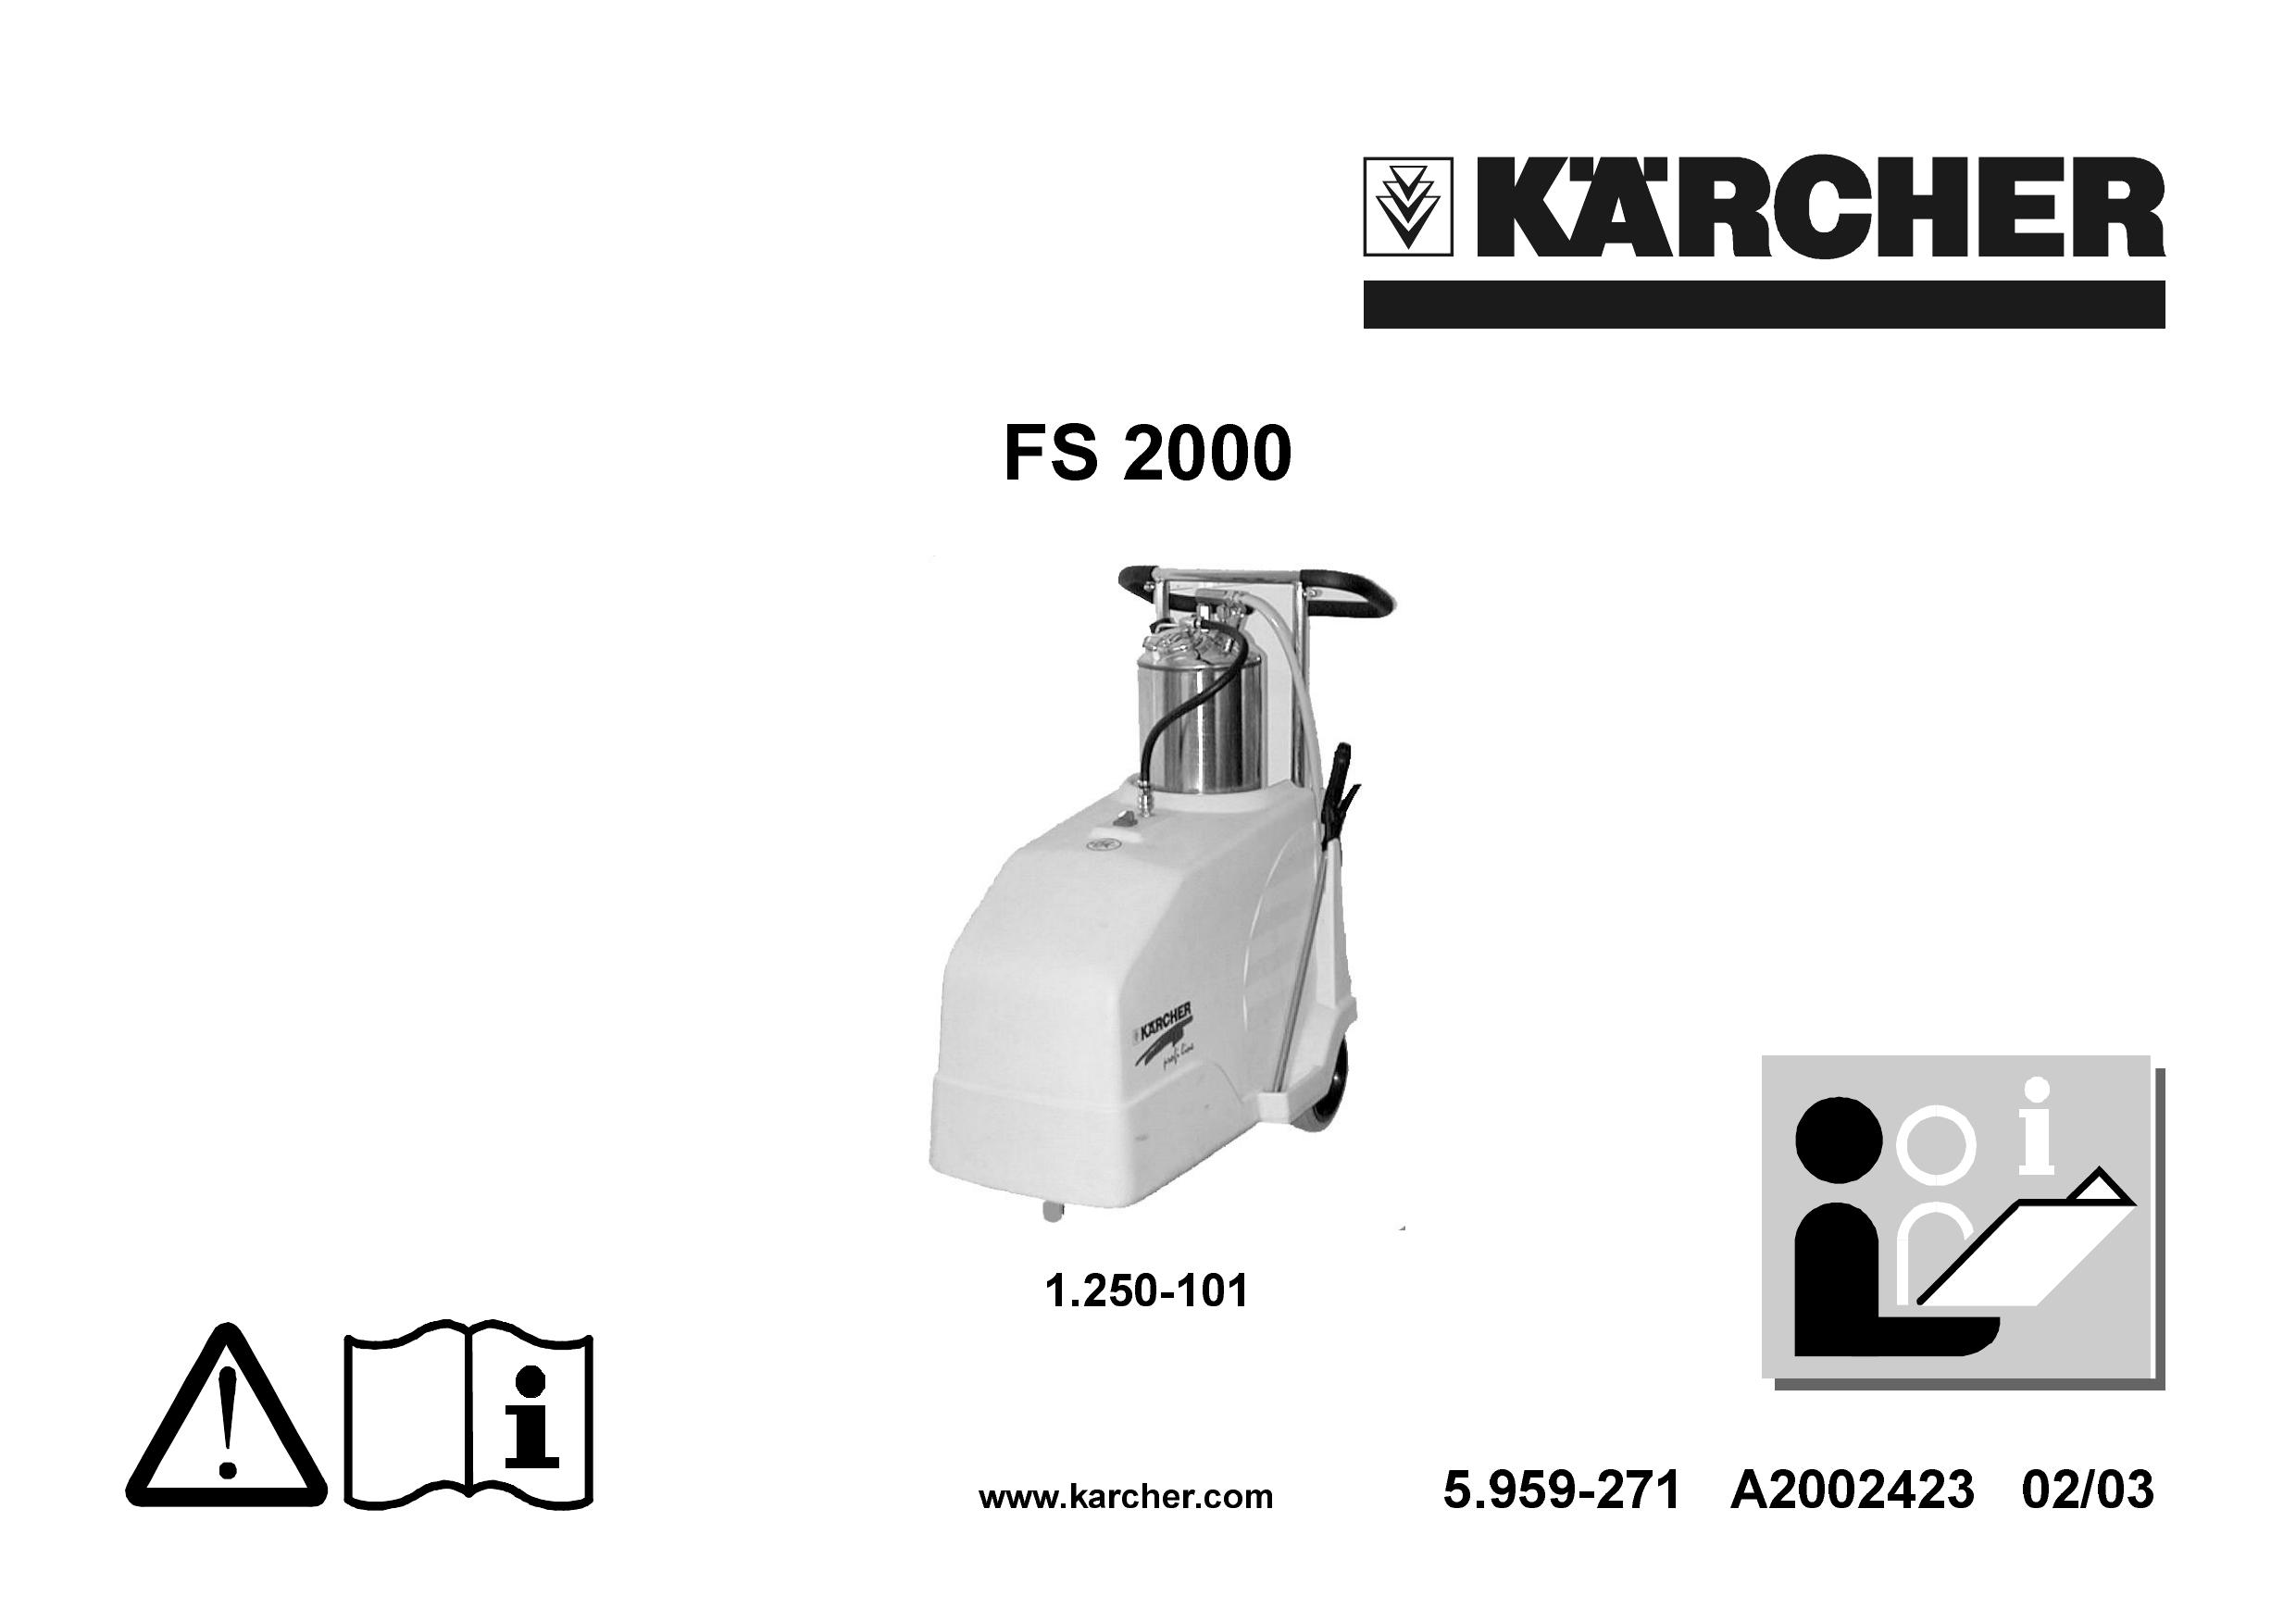 Karcher FS 2000 Pressure Washer User Manual